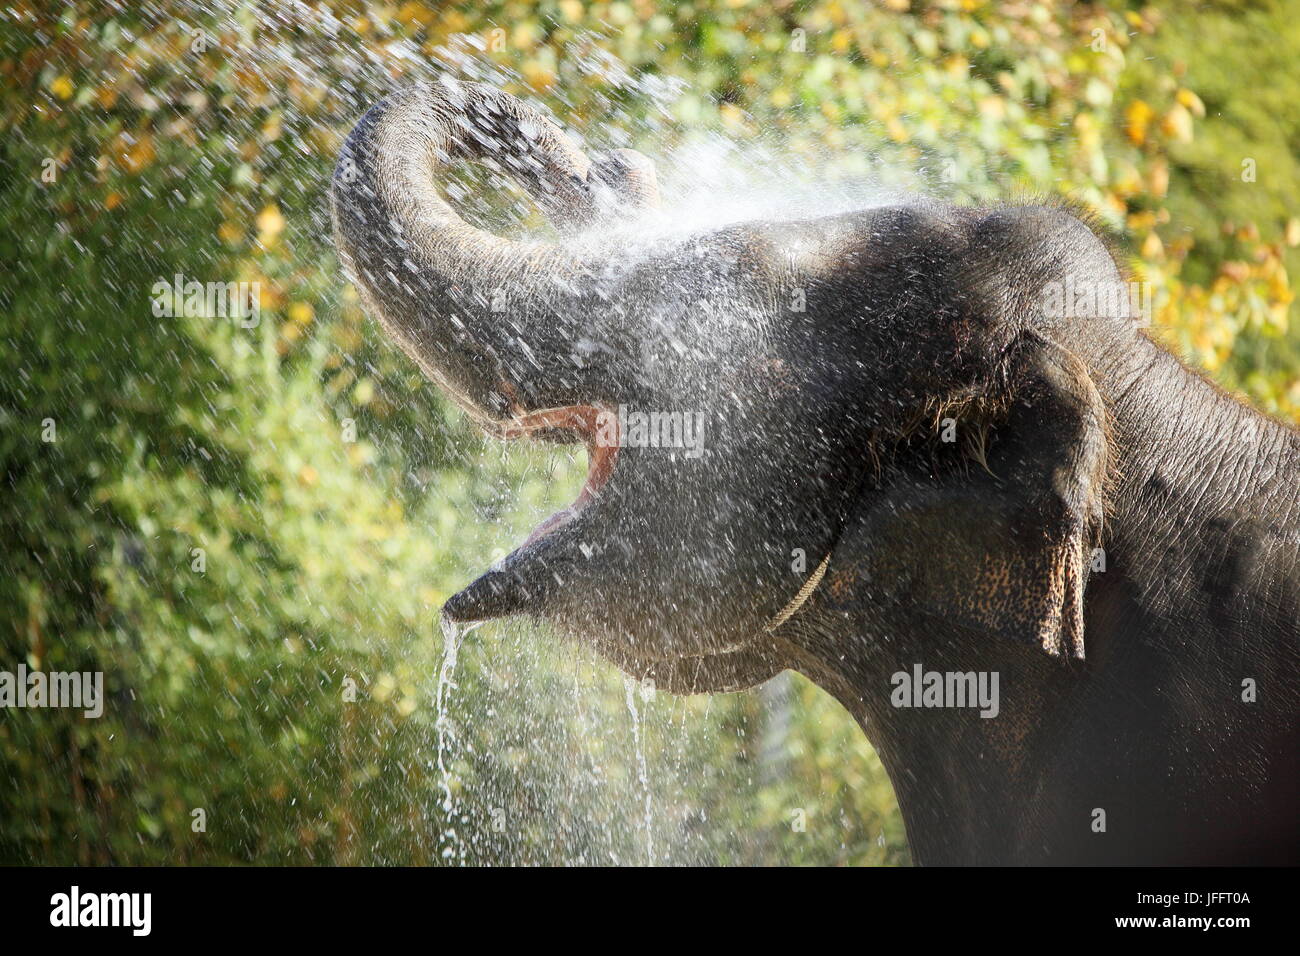 showering elephant Stock Photo